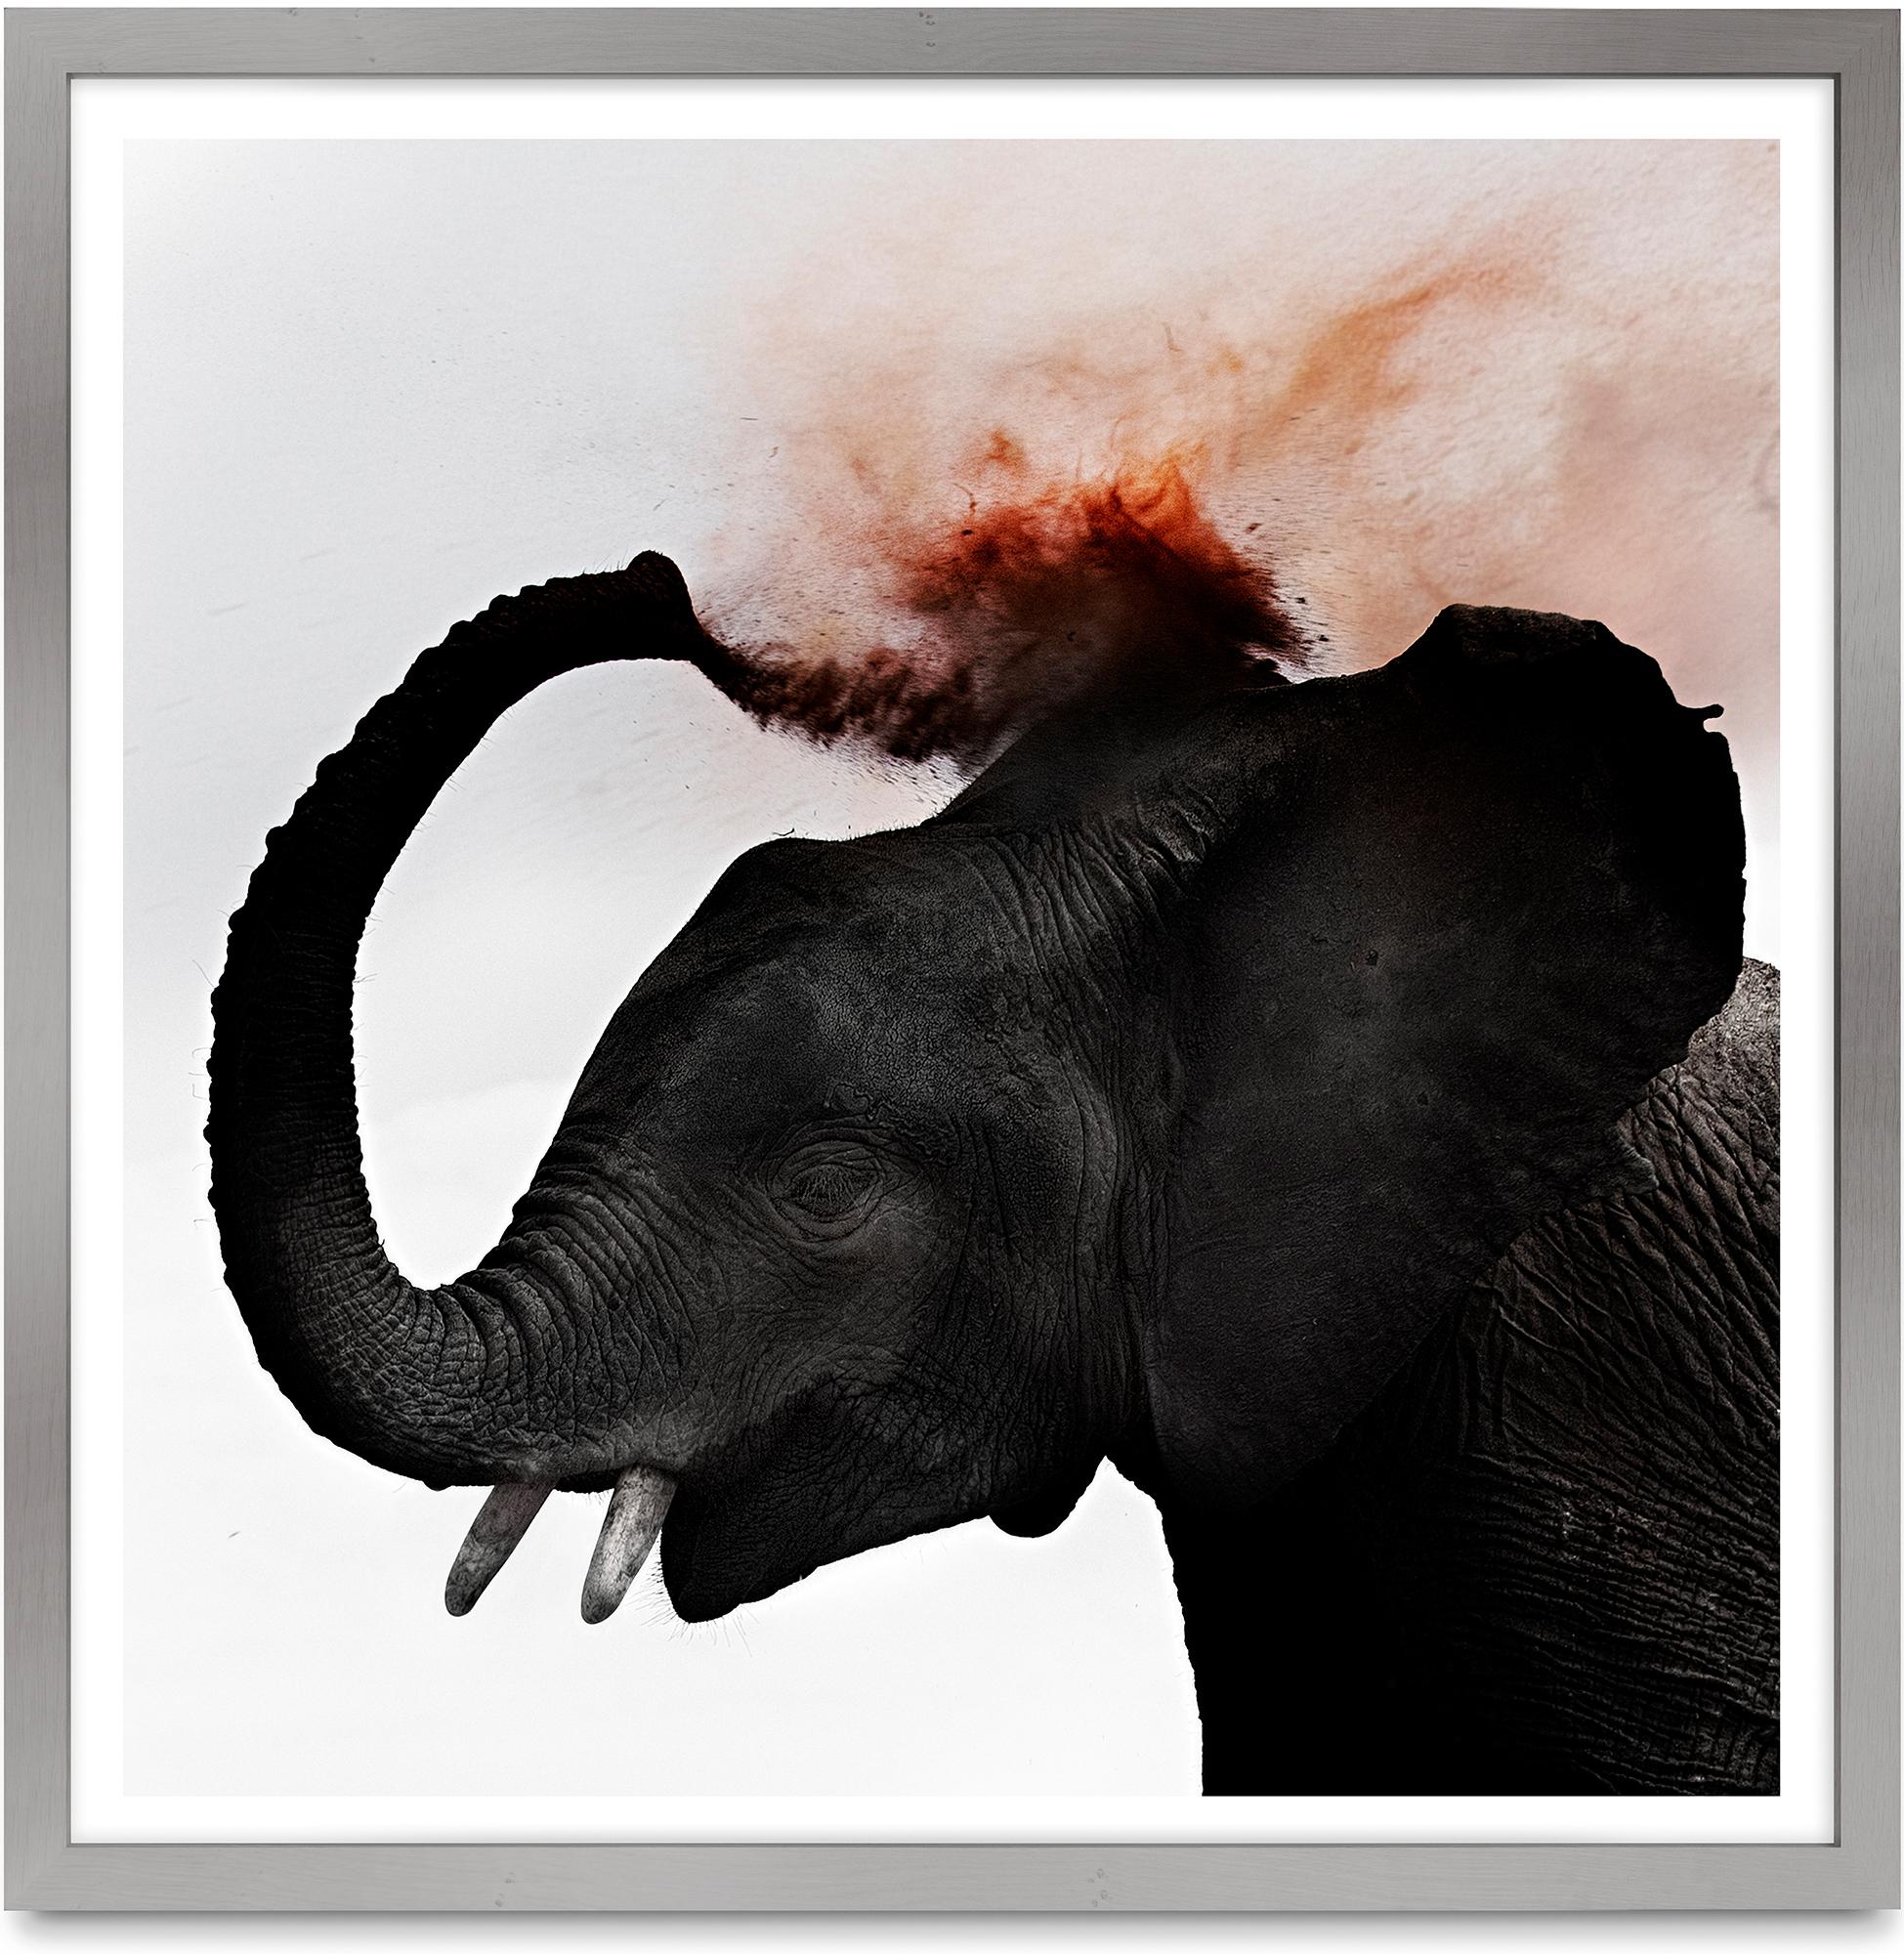 Dust III, Kenya, Éléphant, animal, faune, photographie en couleur, Afrique - Photograph de Joachim Schmeisser